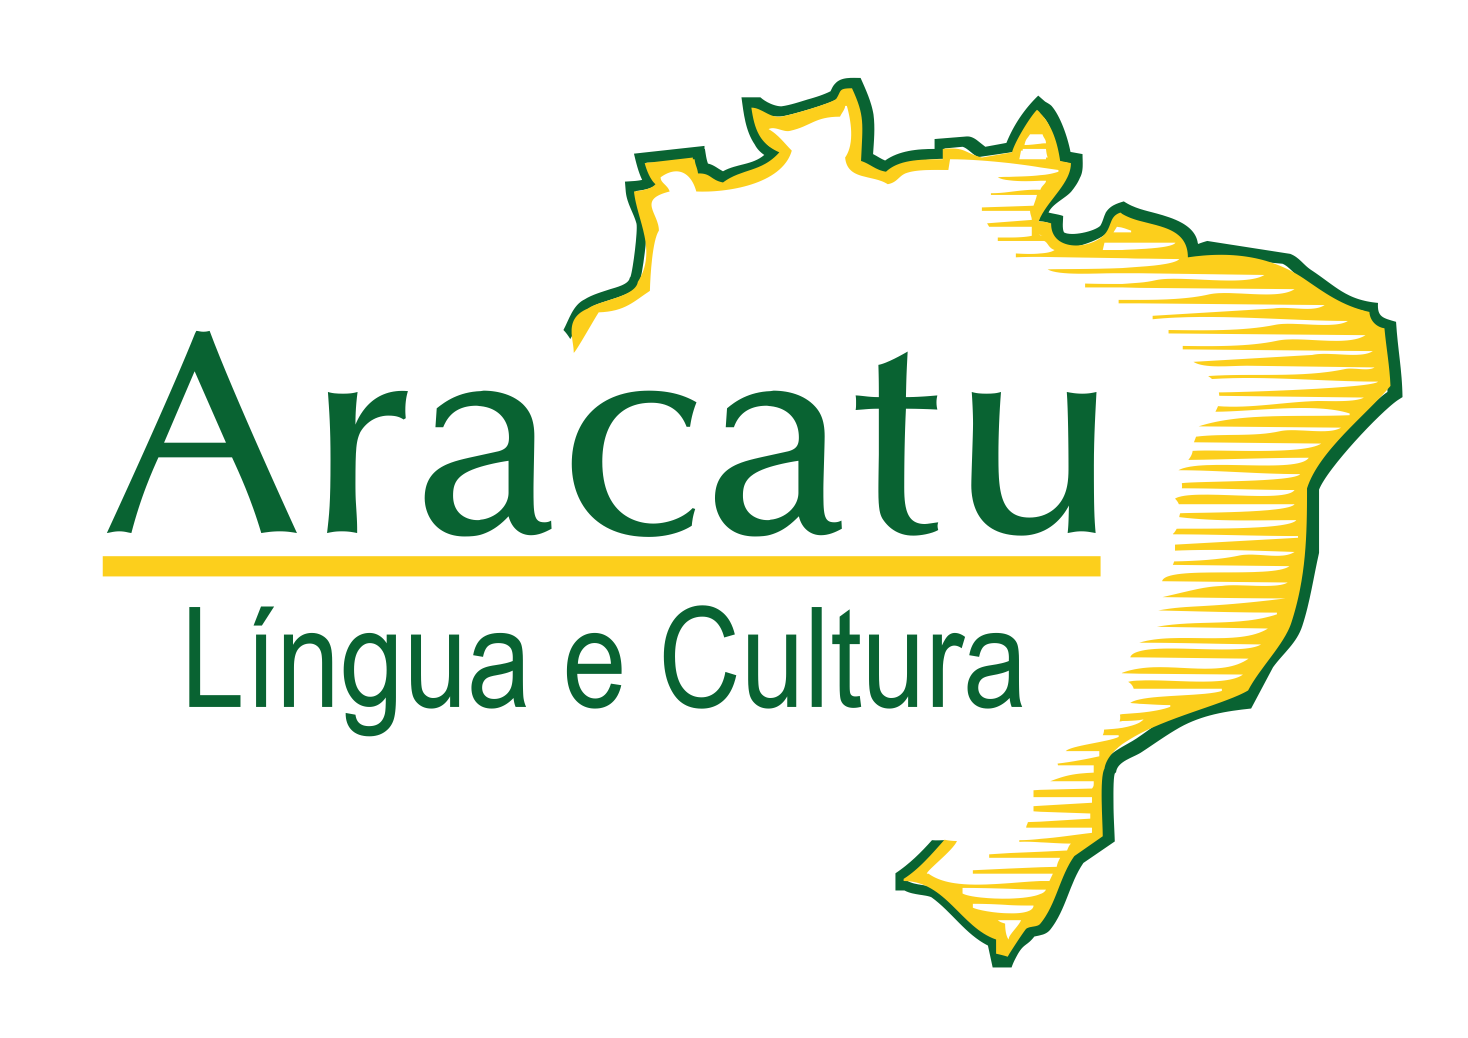 Instituto Aracatu